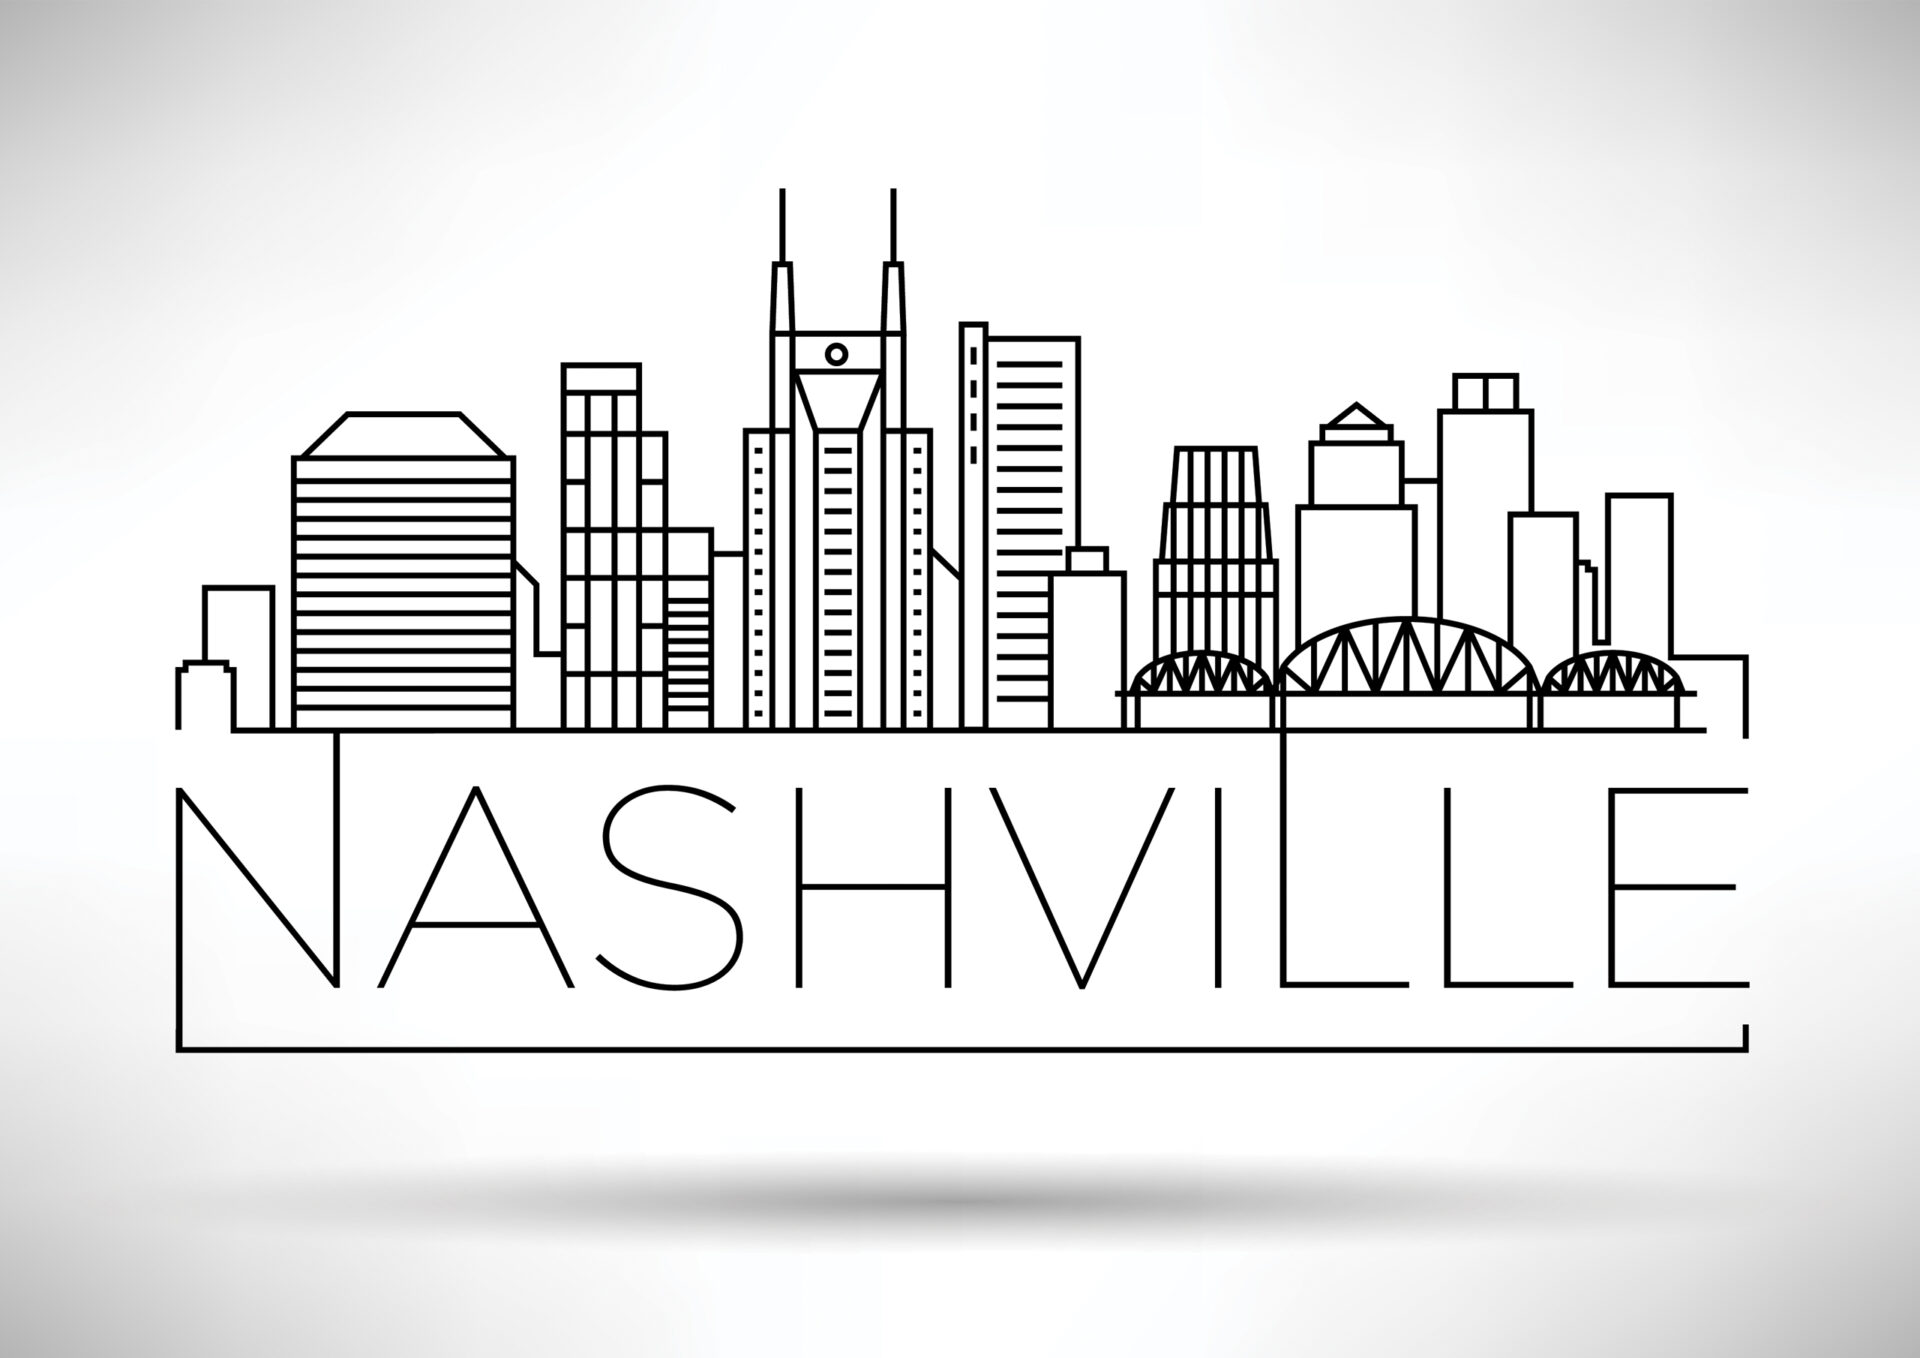 Nashville graphic with skyline